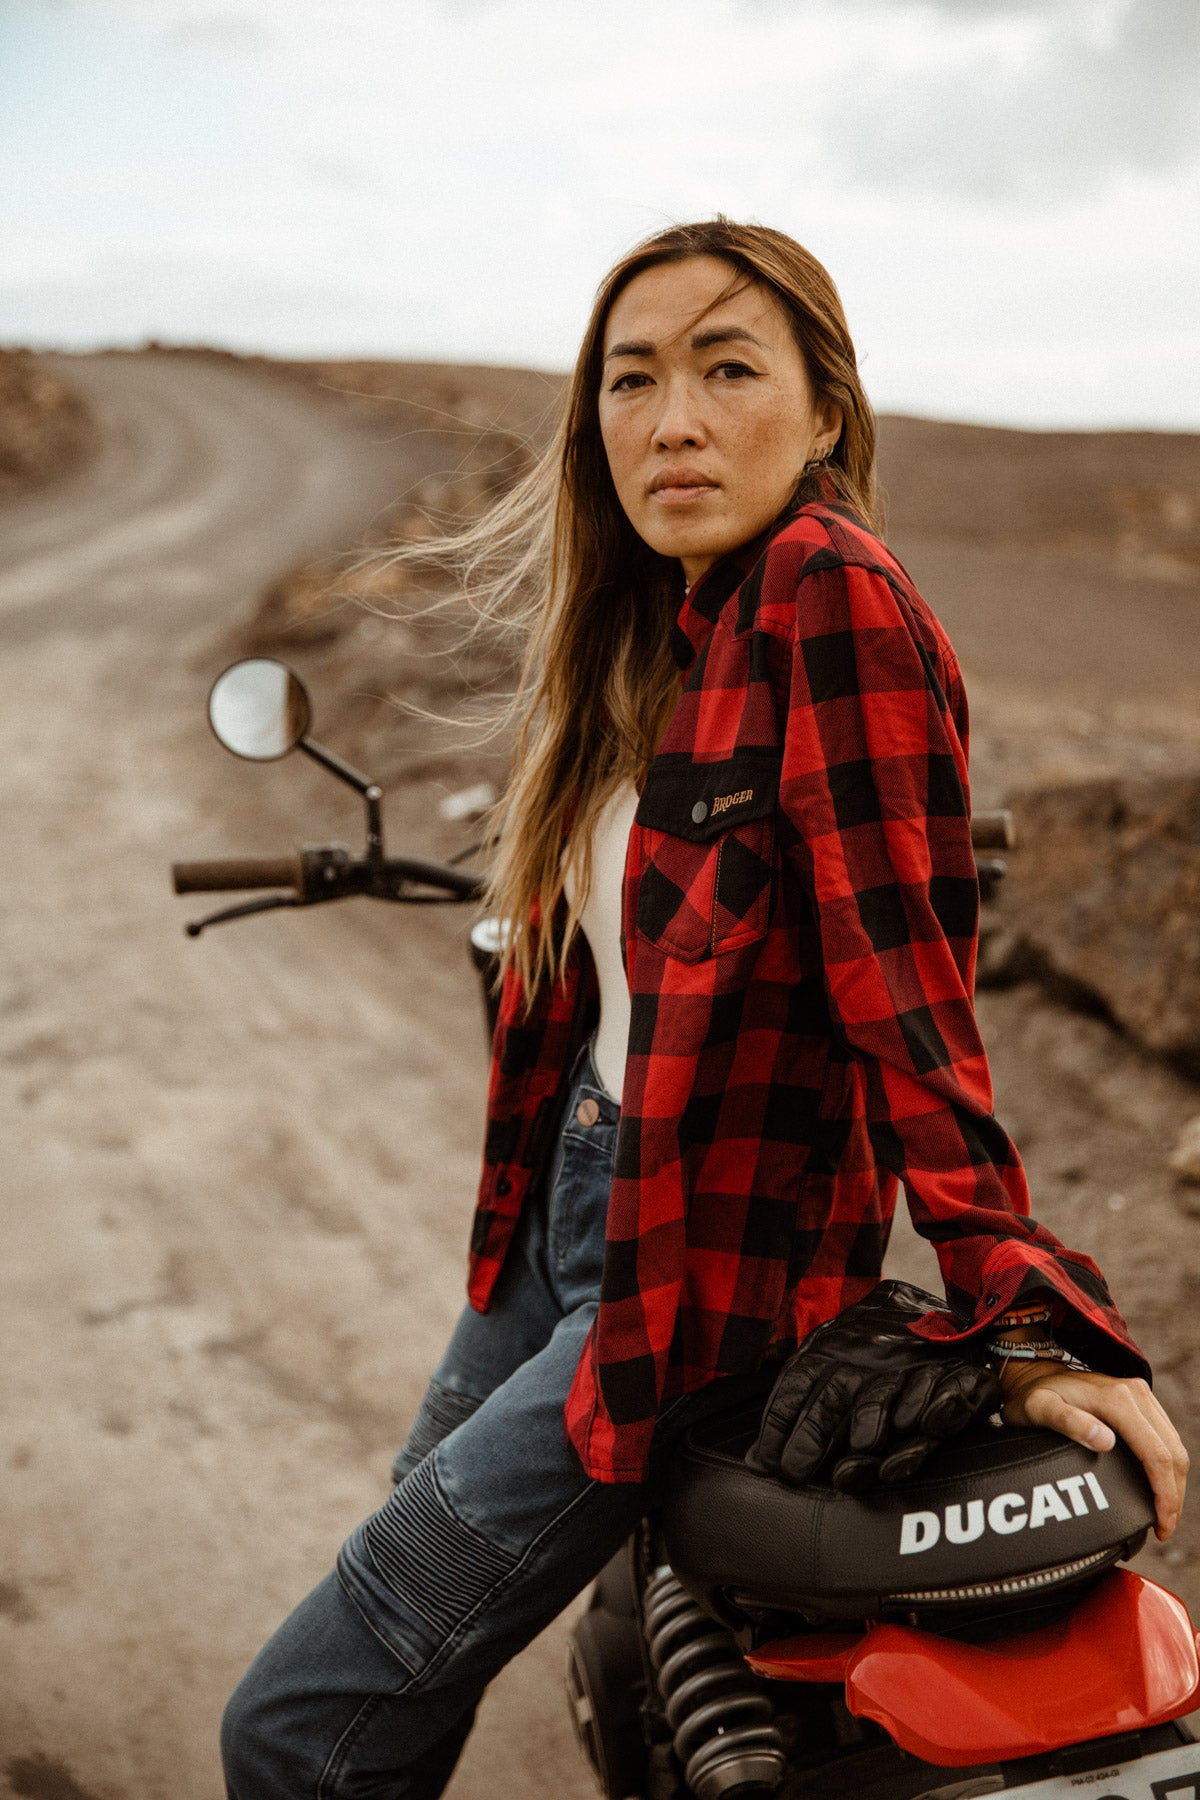 Alaska Lady Lumberjack Red Motorcycle Shirt